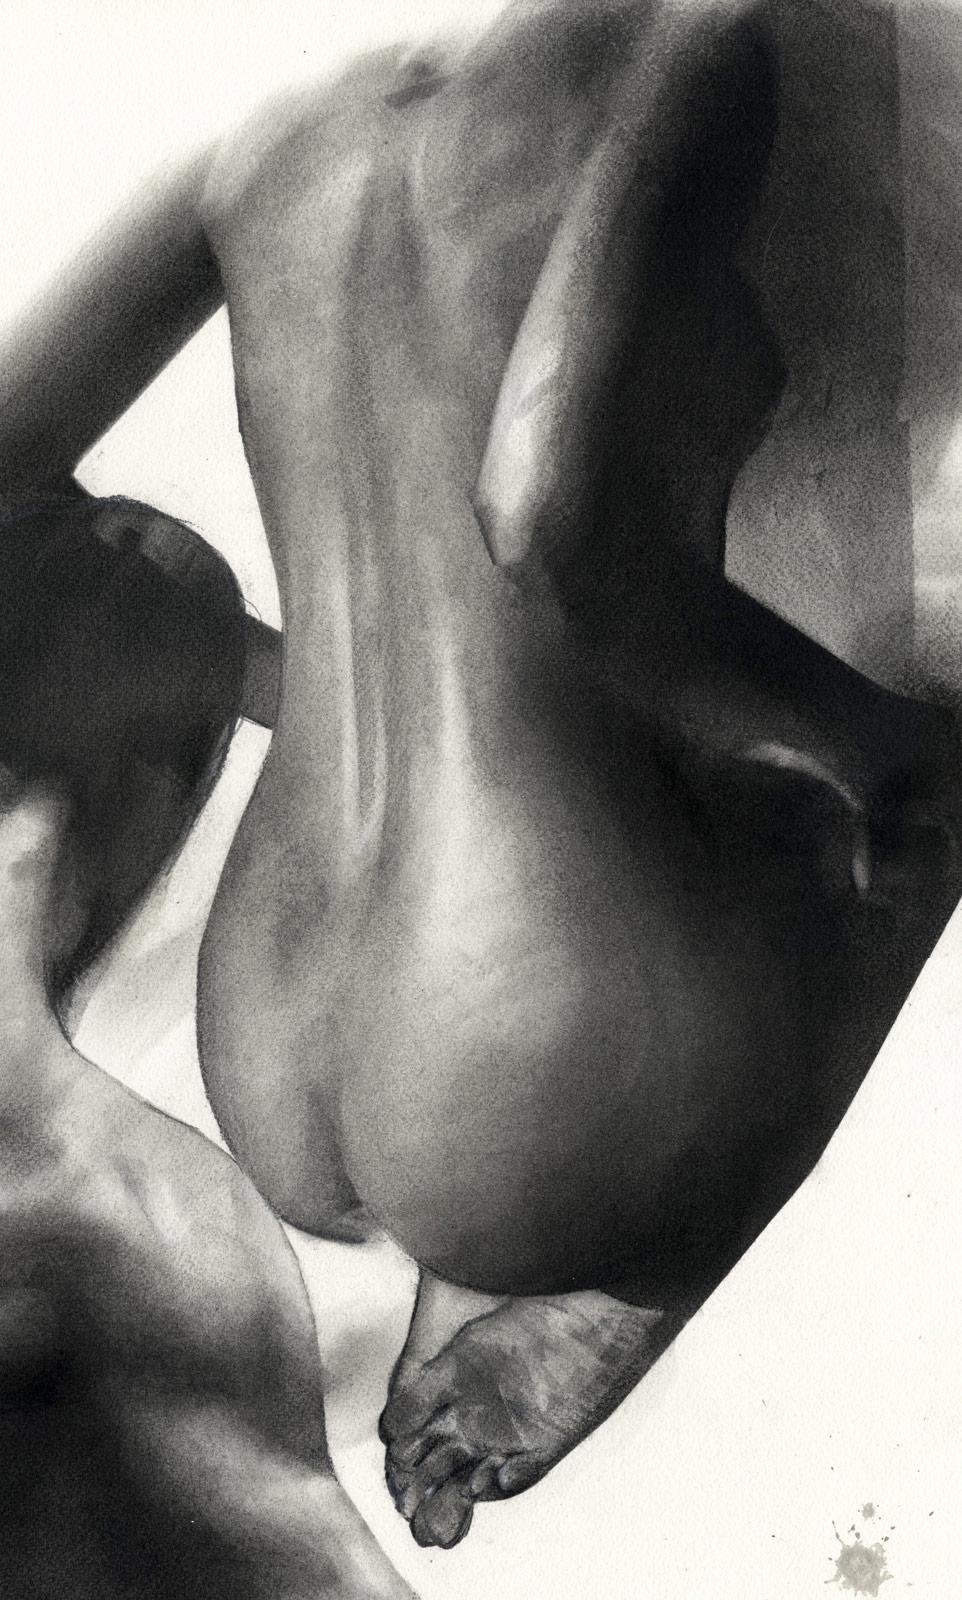 Nudefarbener Mann und Frau (Desire und sexuelle Spannung) – Art von Tom Leveritt